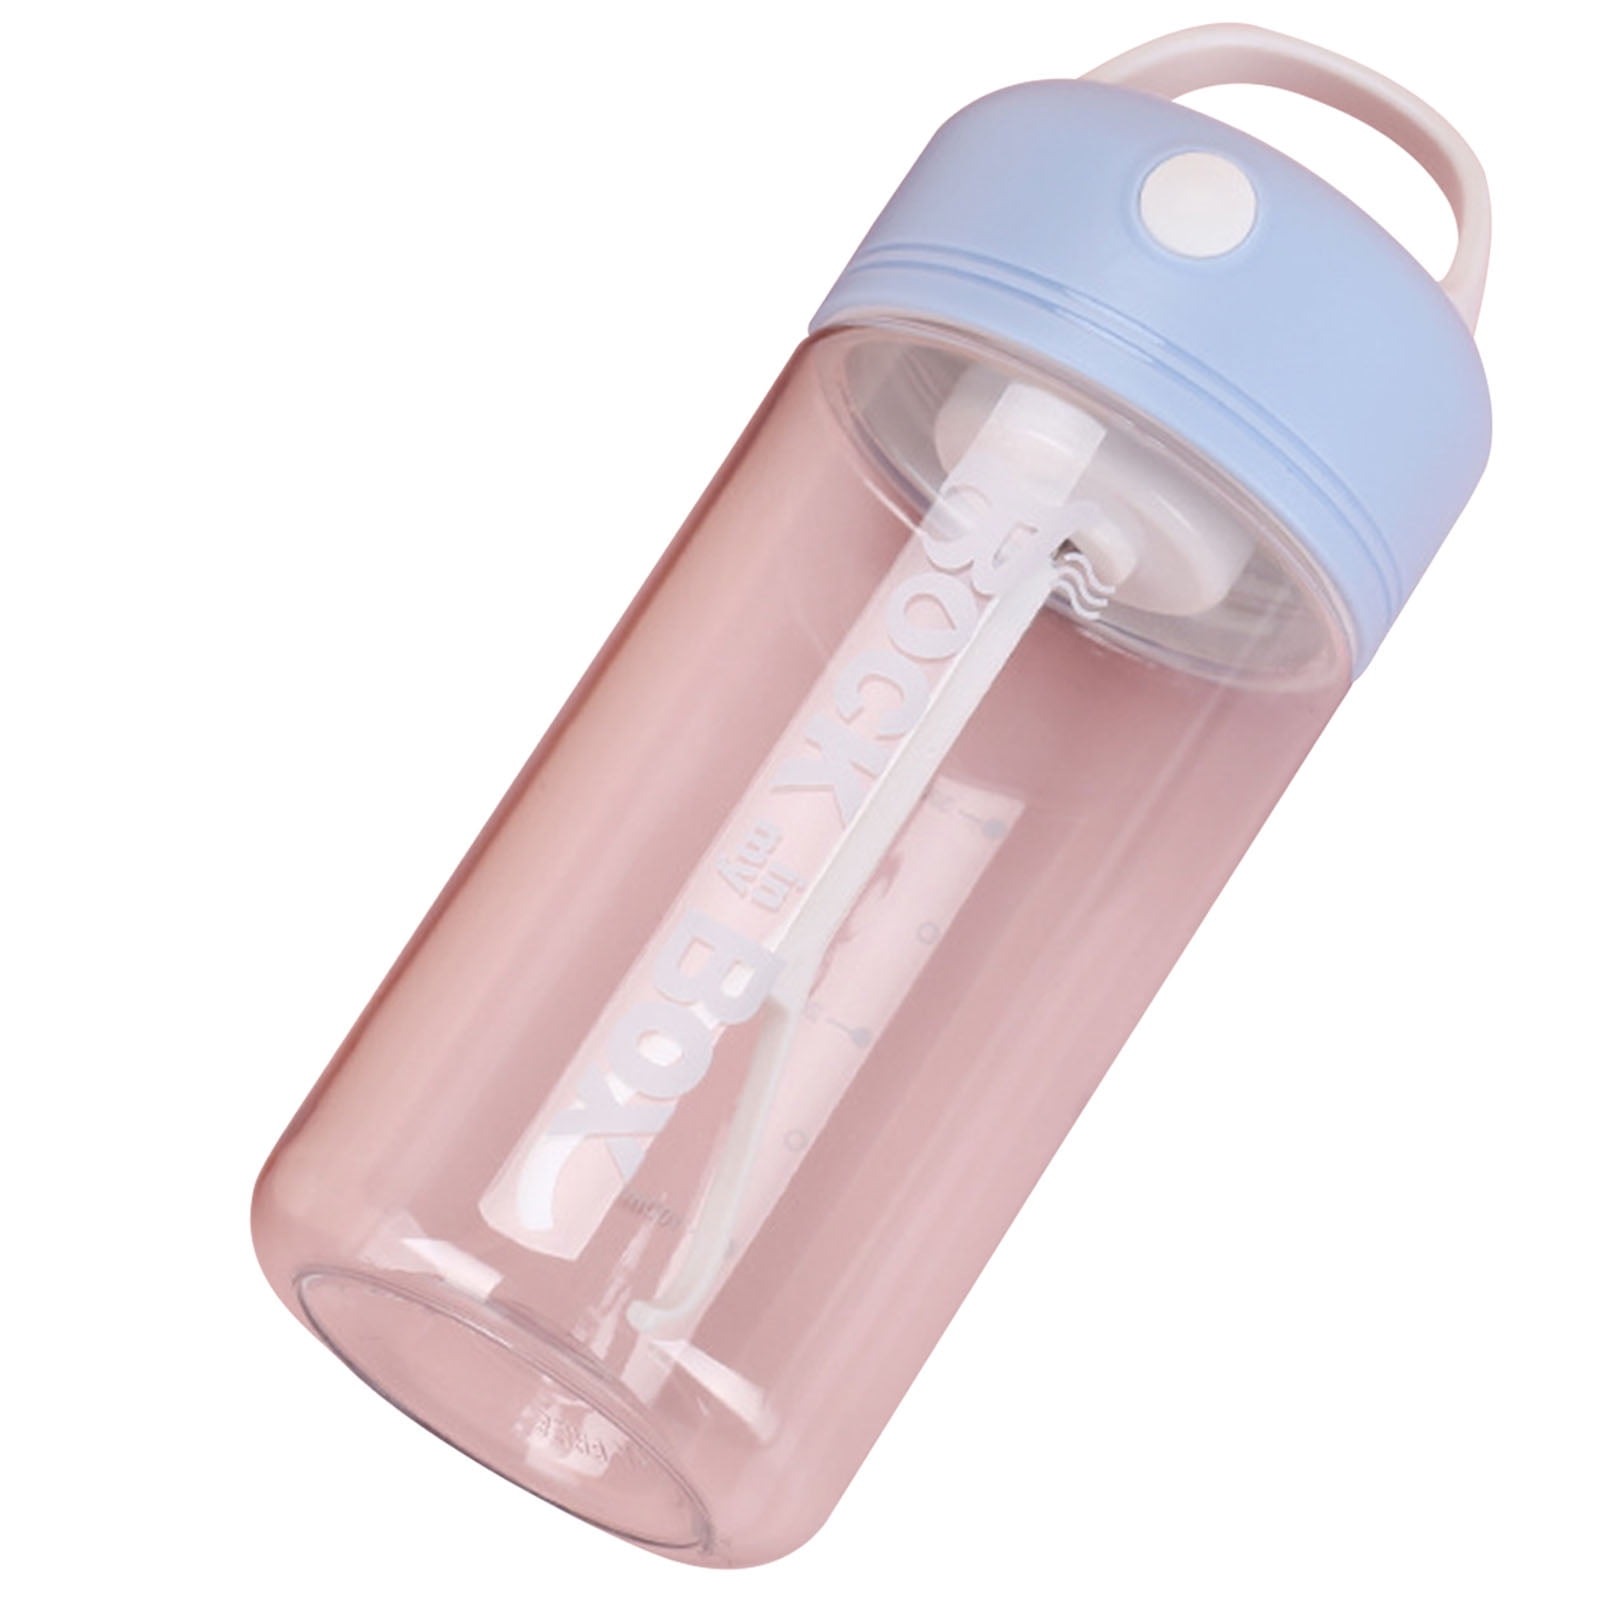 27oz Cylinder Vortex Water Bottle | Plum Grove